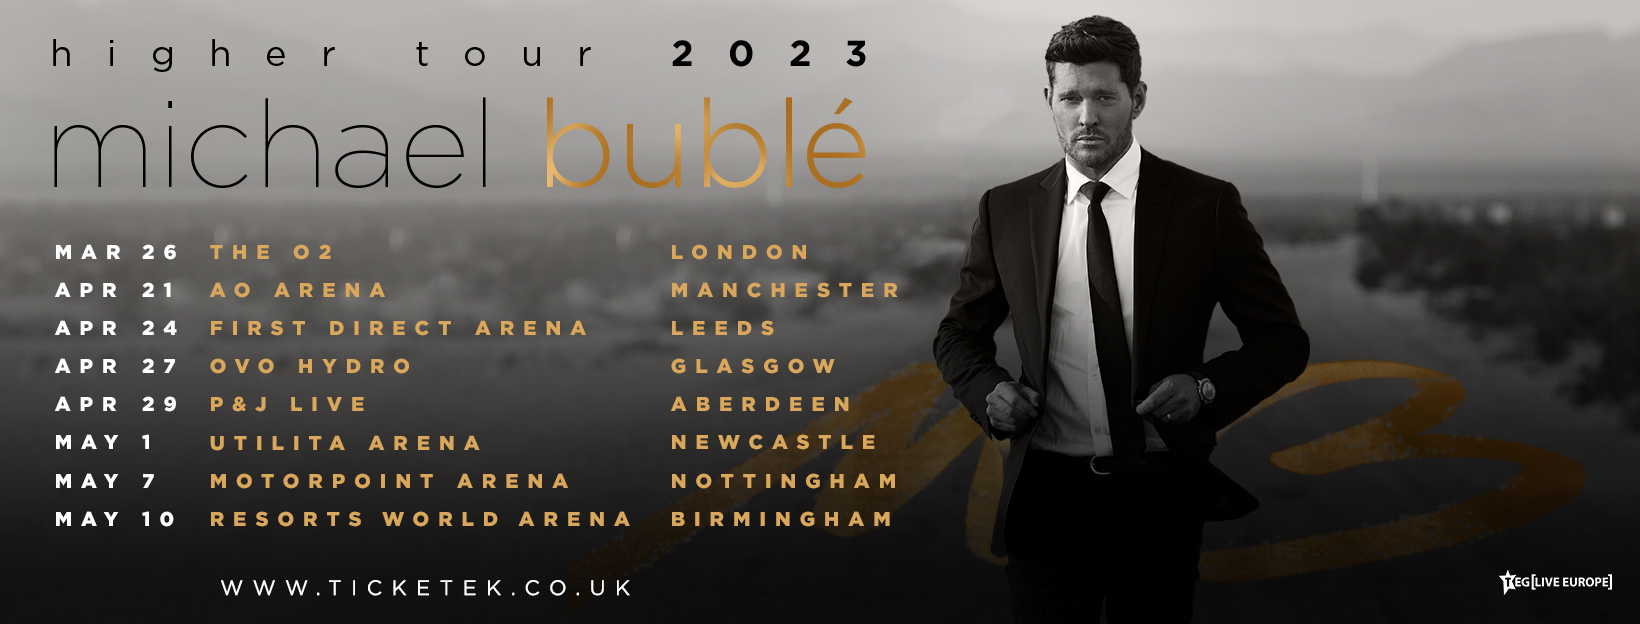 michael buble tour dates uk 2023